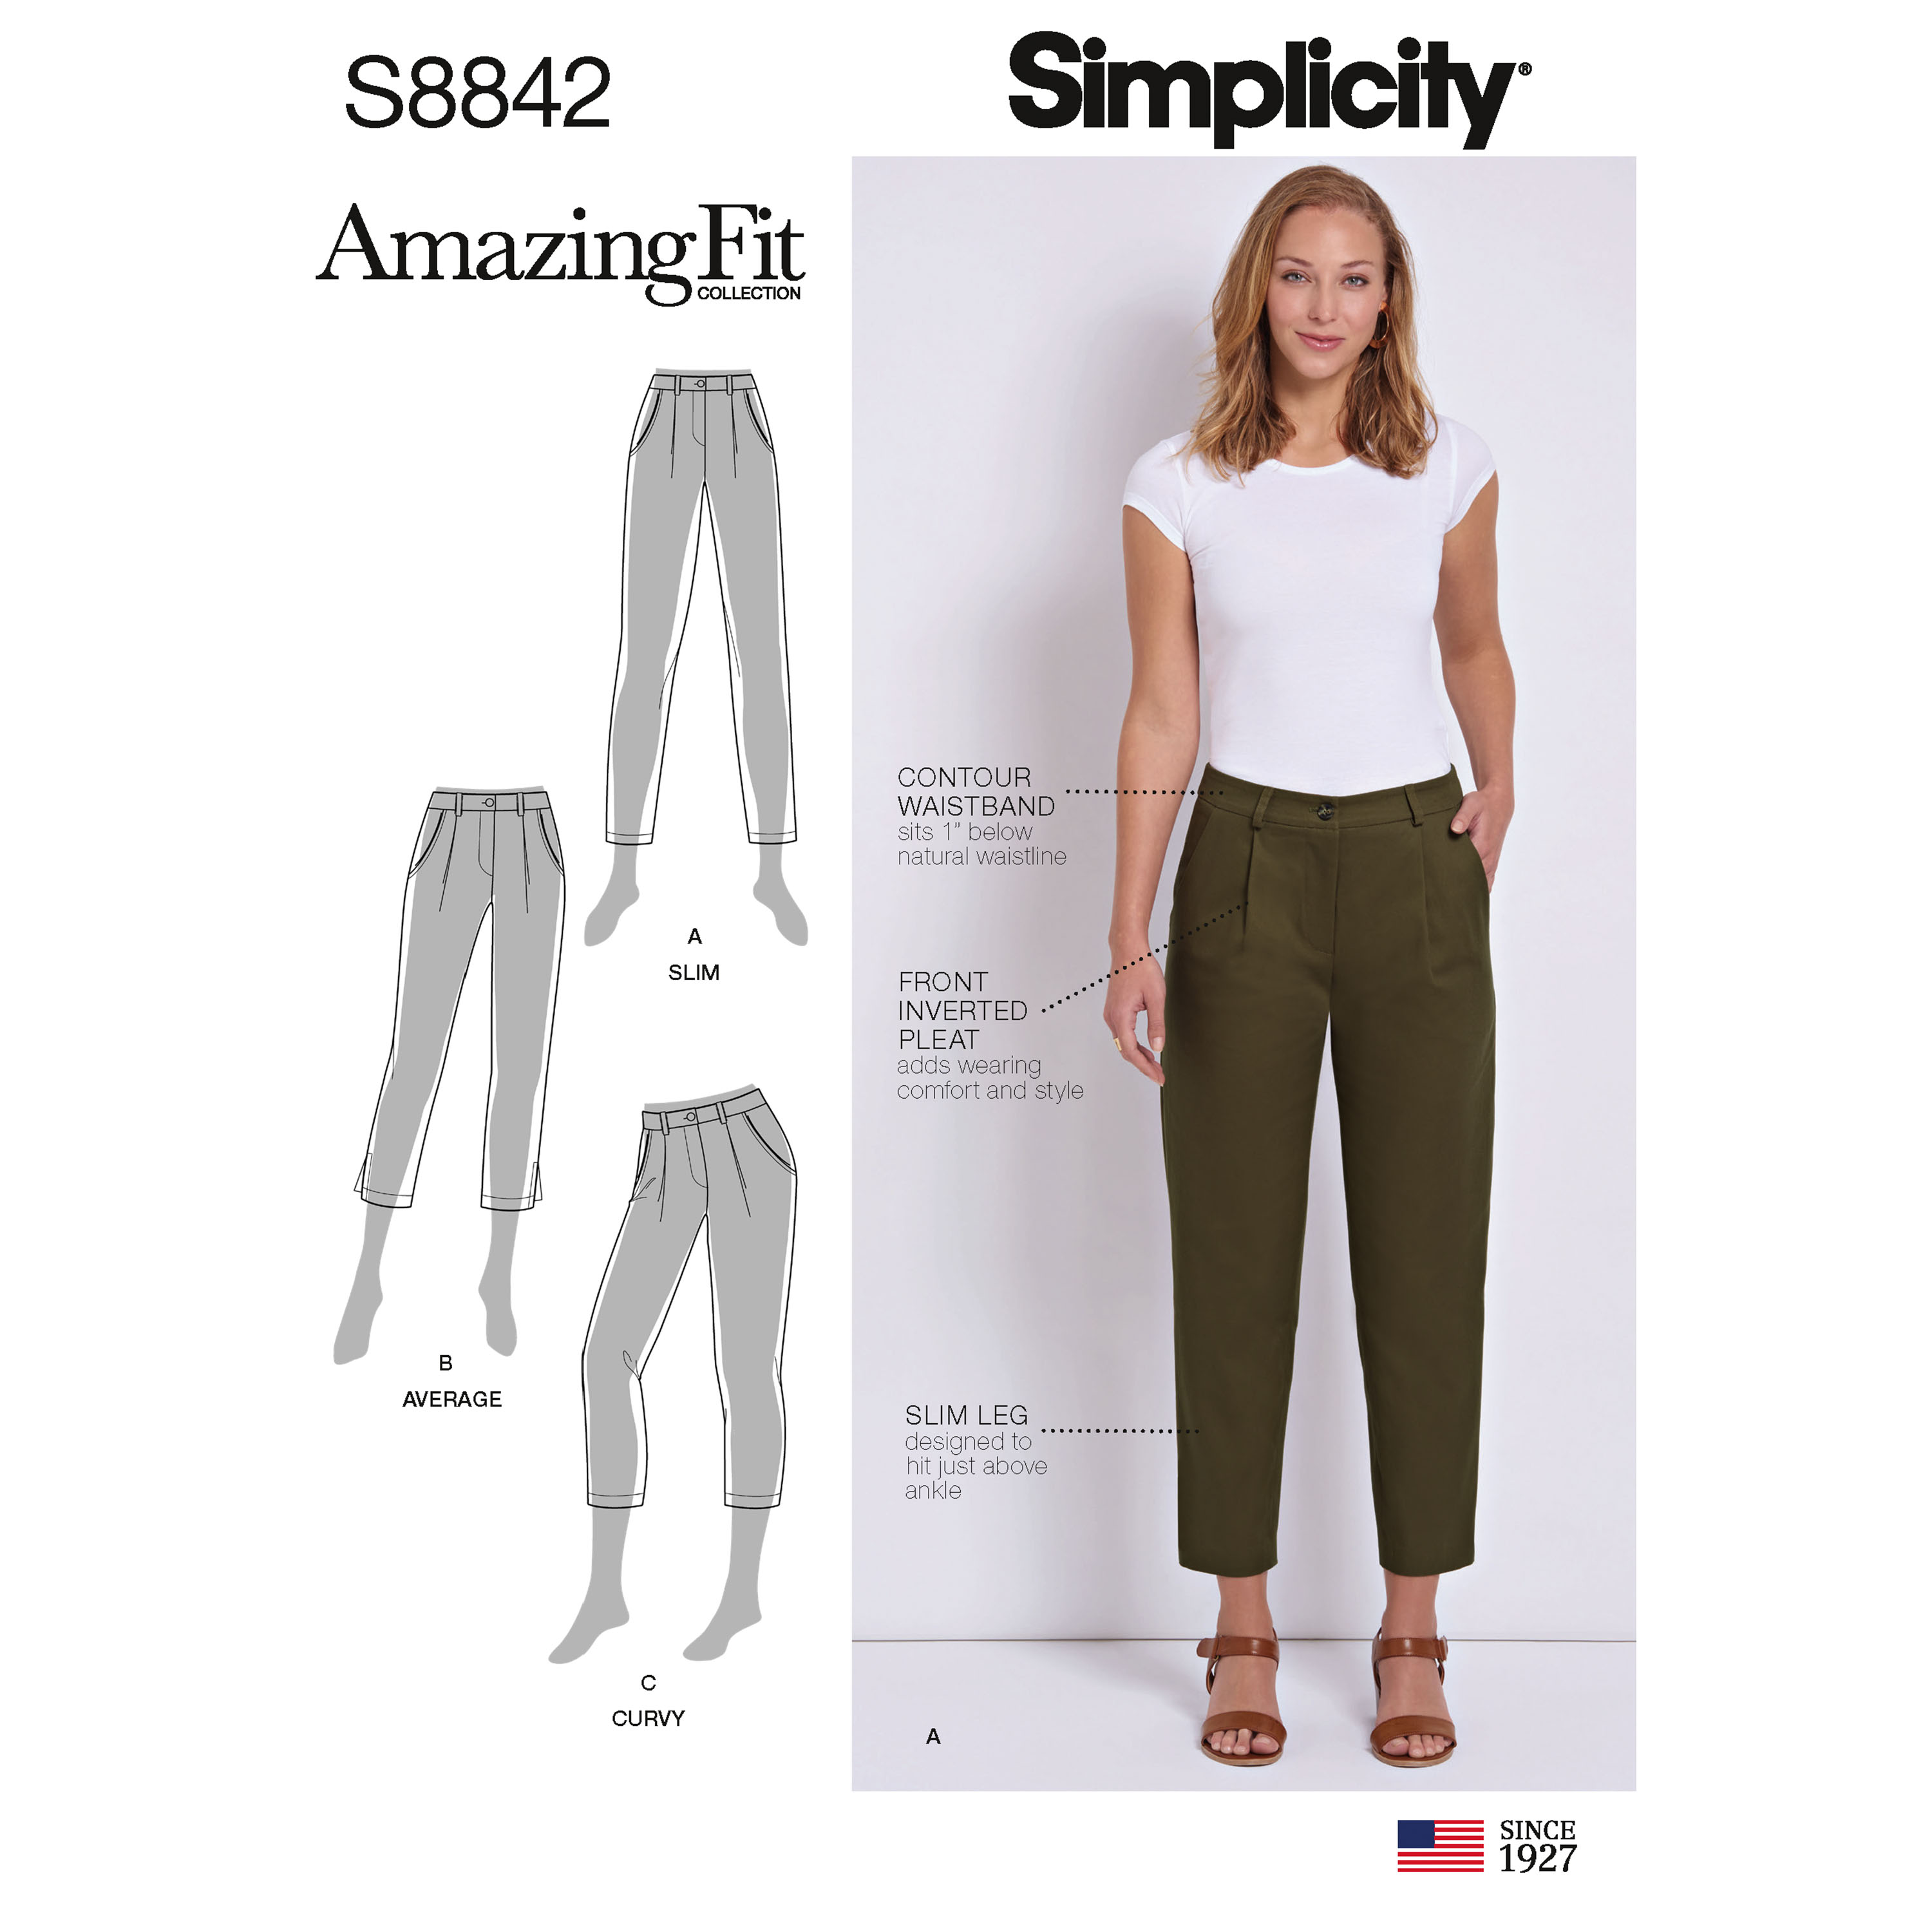 Simplicity 8842 Misses'/Miss Petite Amazing Fit Pants